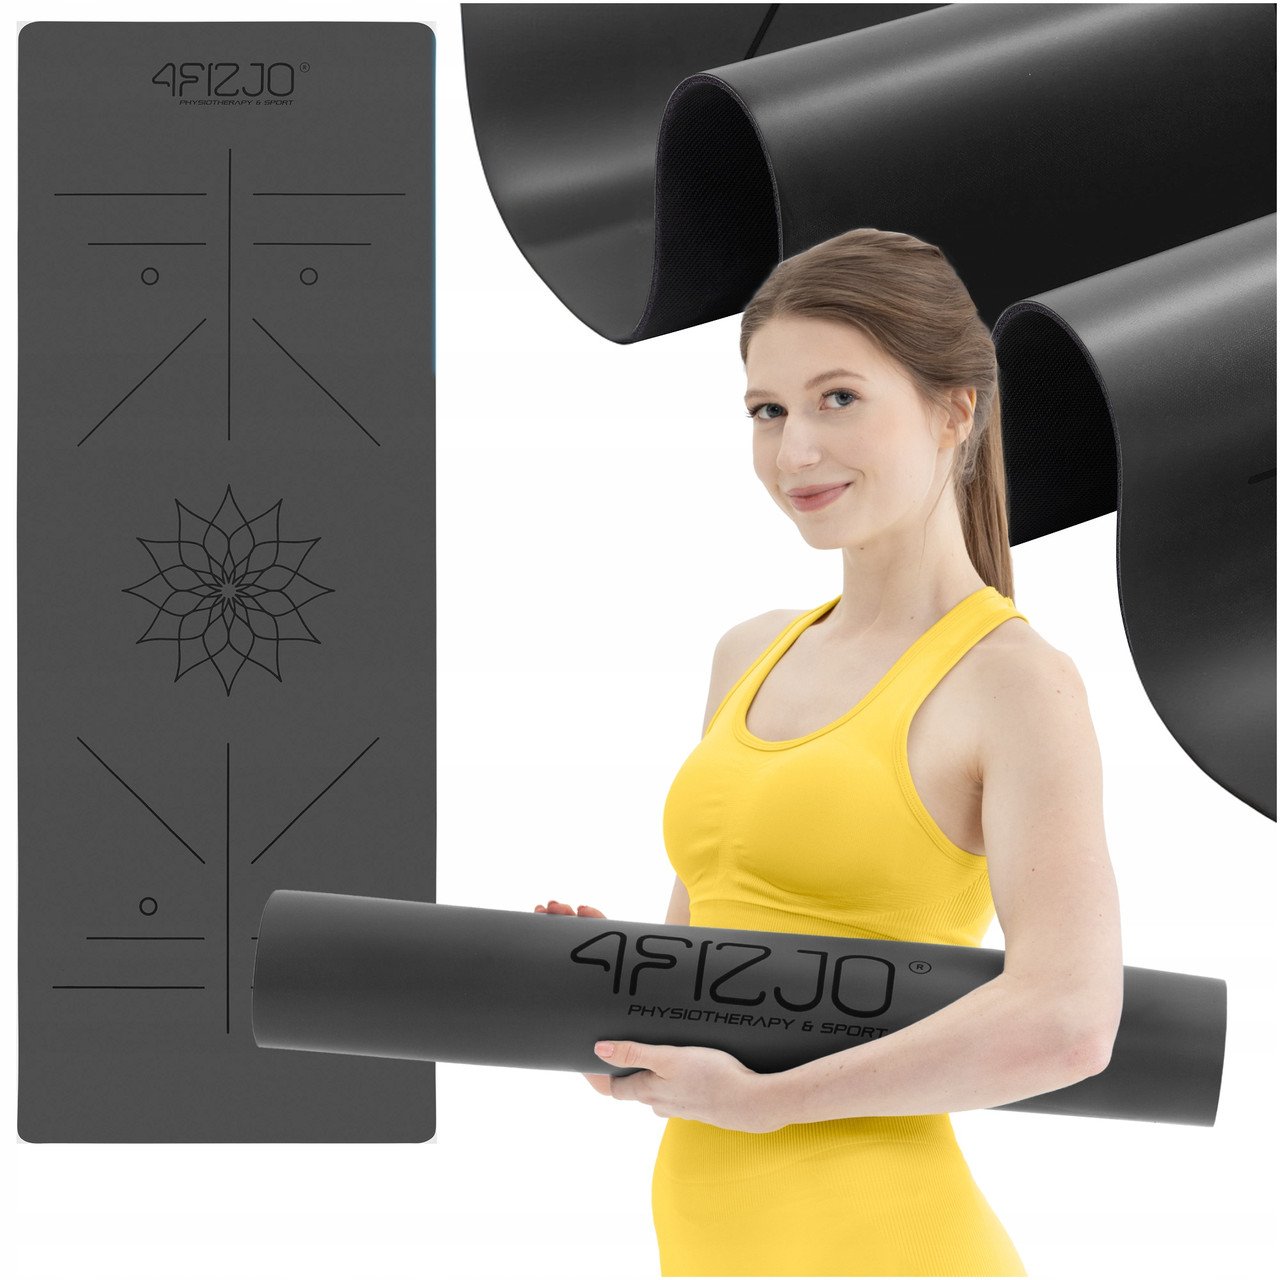 Килимок (мат) спортивний 4FIZJO PU 183 x 68 x 0.4 см для йоги та фітнесу 4FJ0587 Black,  ml, 4FIZJO. Fitness Products. 